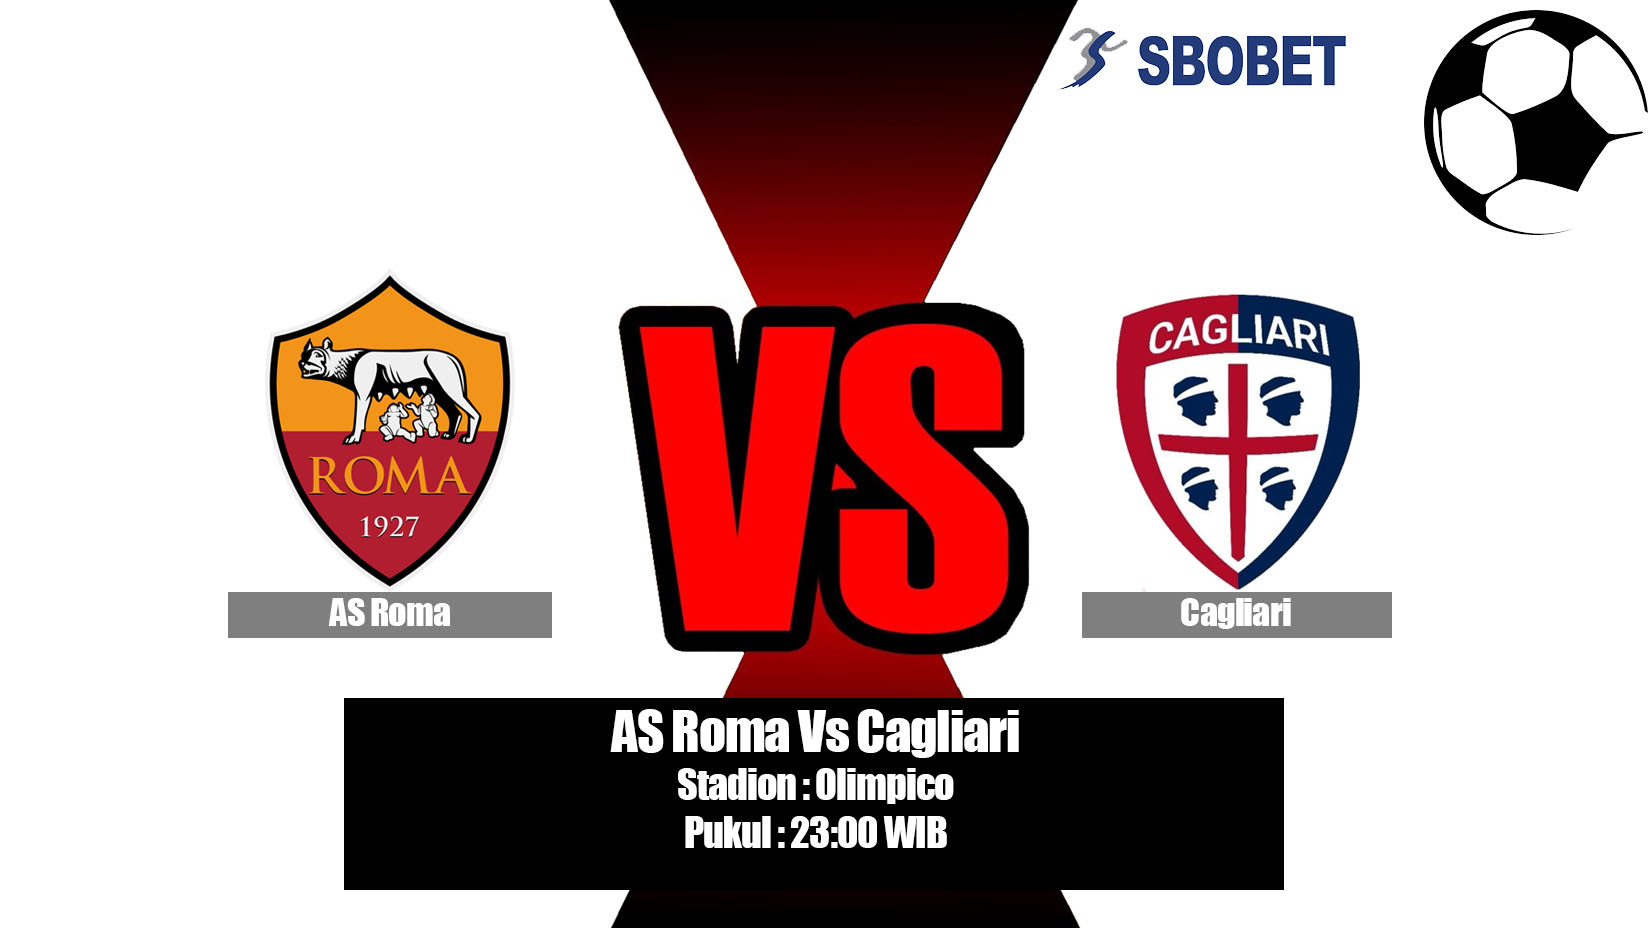 Prediksi Bola AS Roma Vs Cagliari 27 April 2019